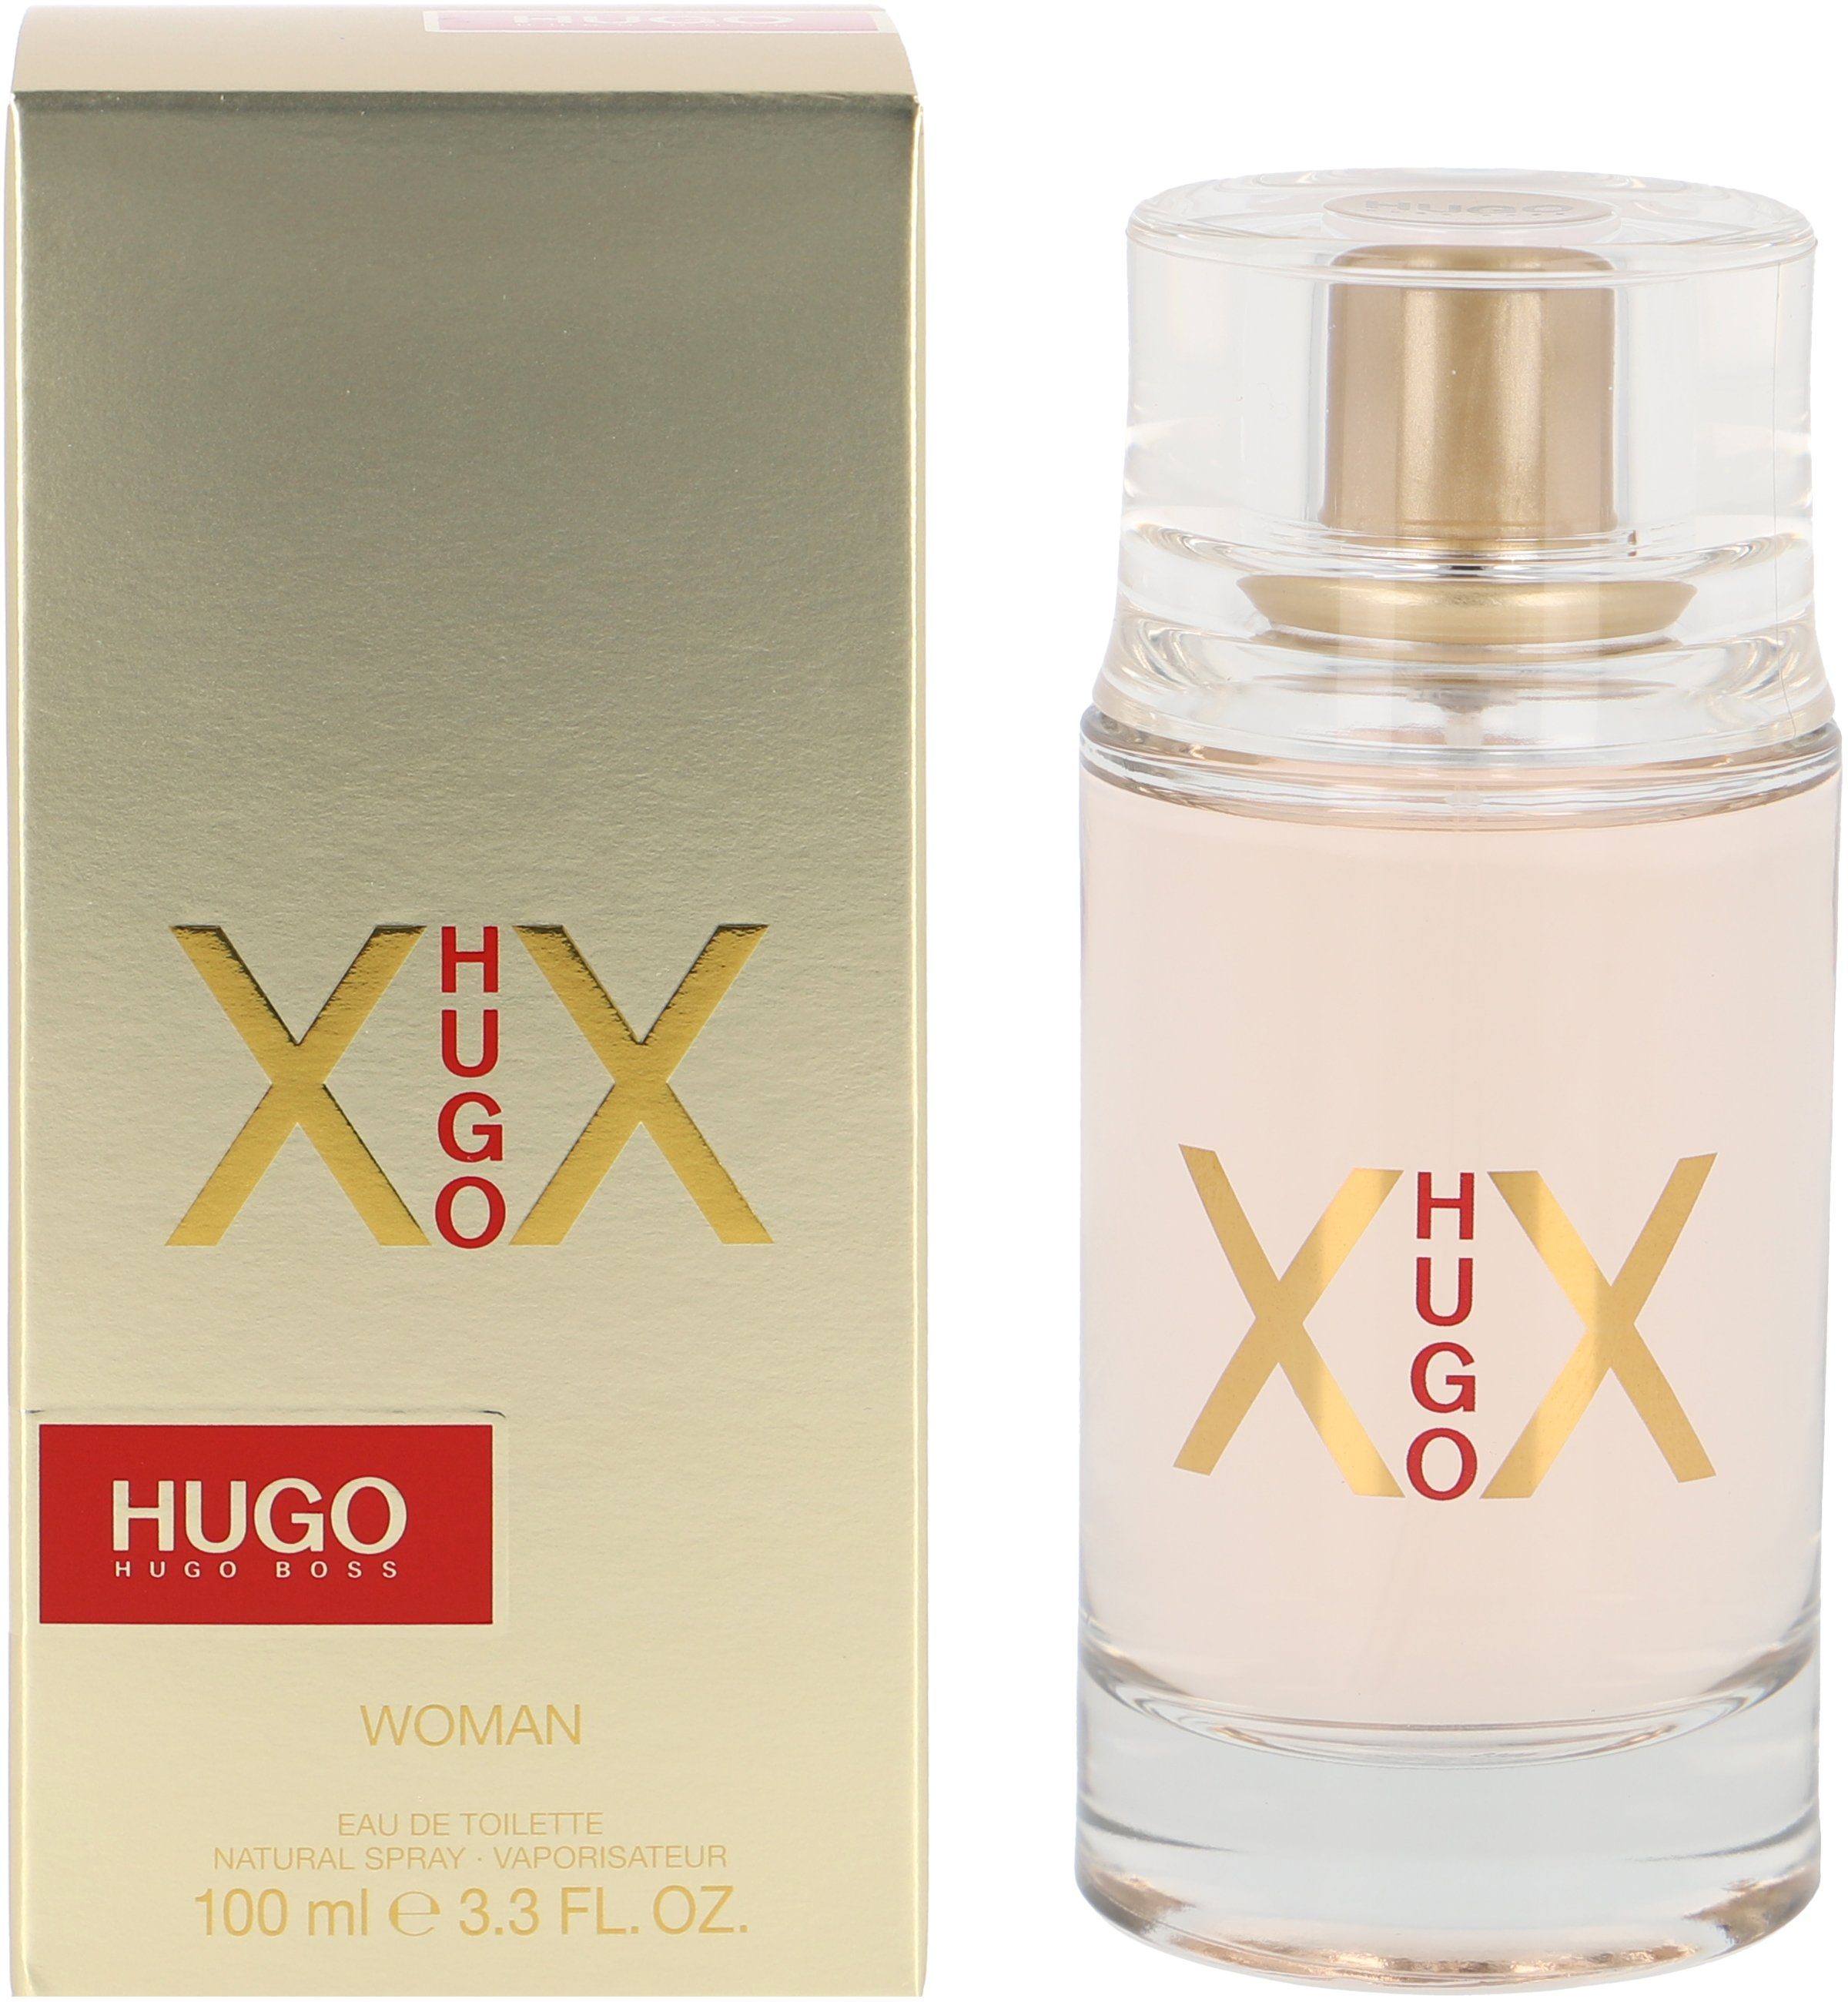 Female HUGO XX Eau Toilette Hugo de